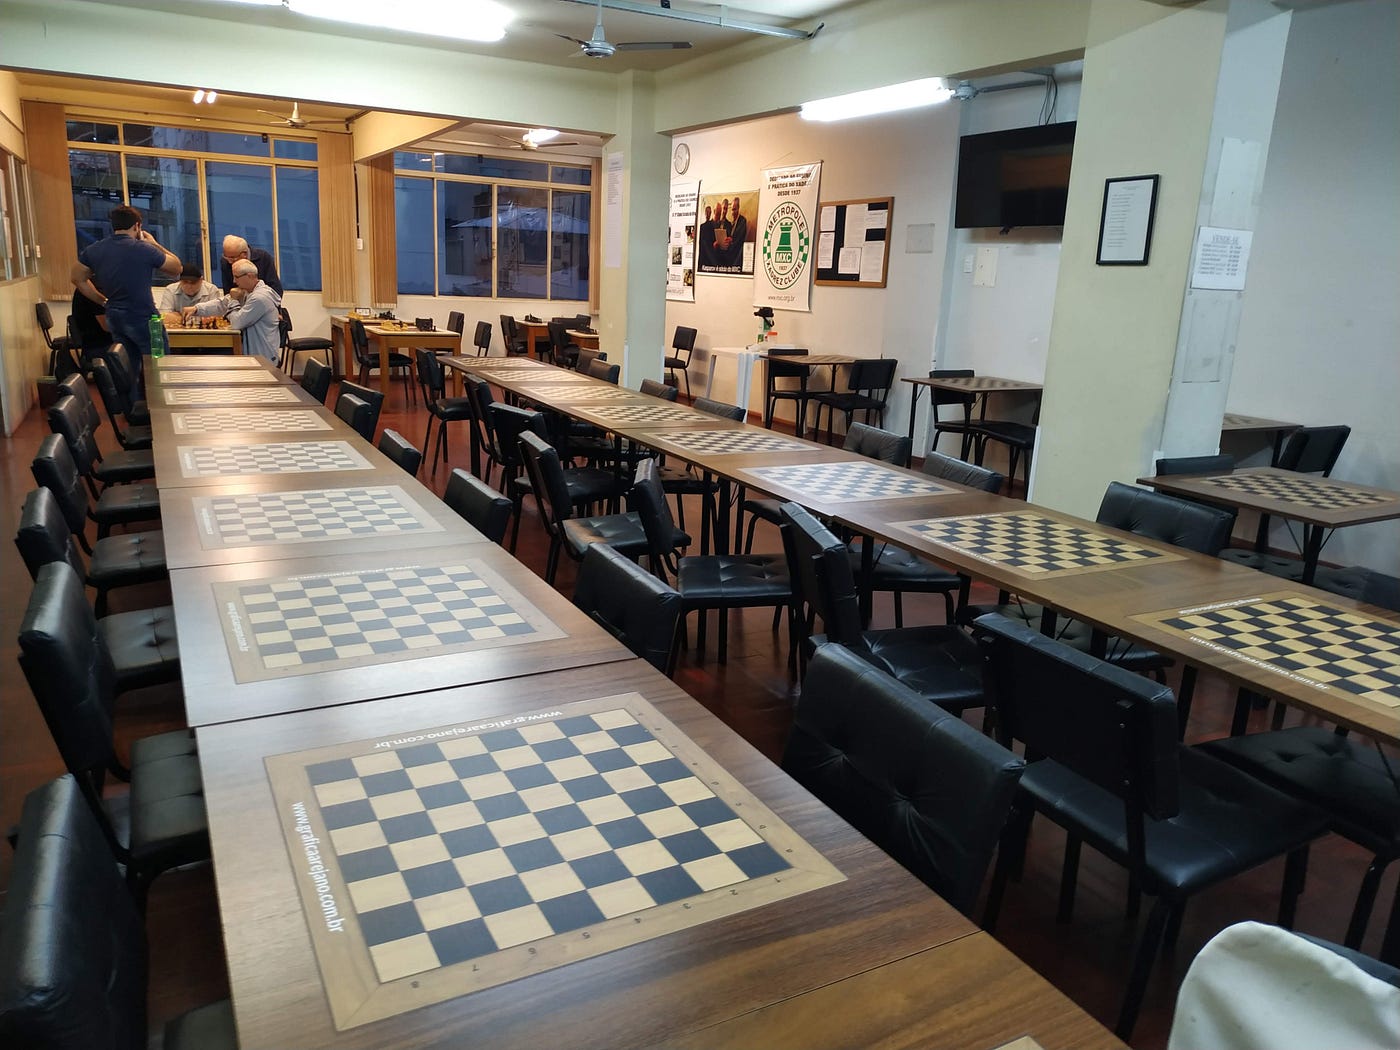 Metrópole Xadrez Clube promove torneio em homenagem à lenda do xadrez  gaúcho nos anos 60